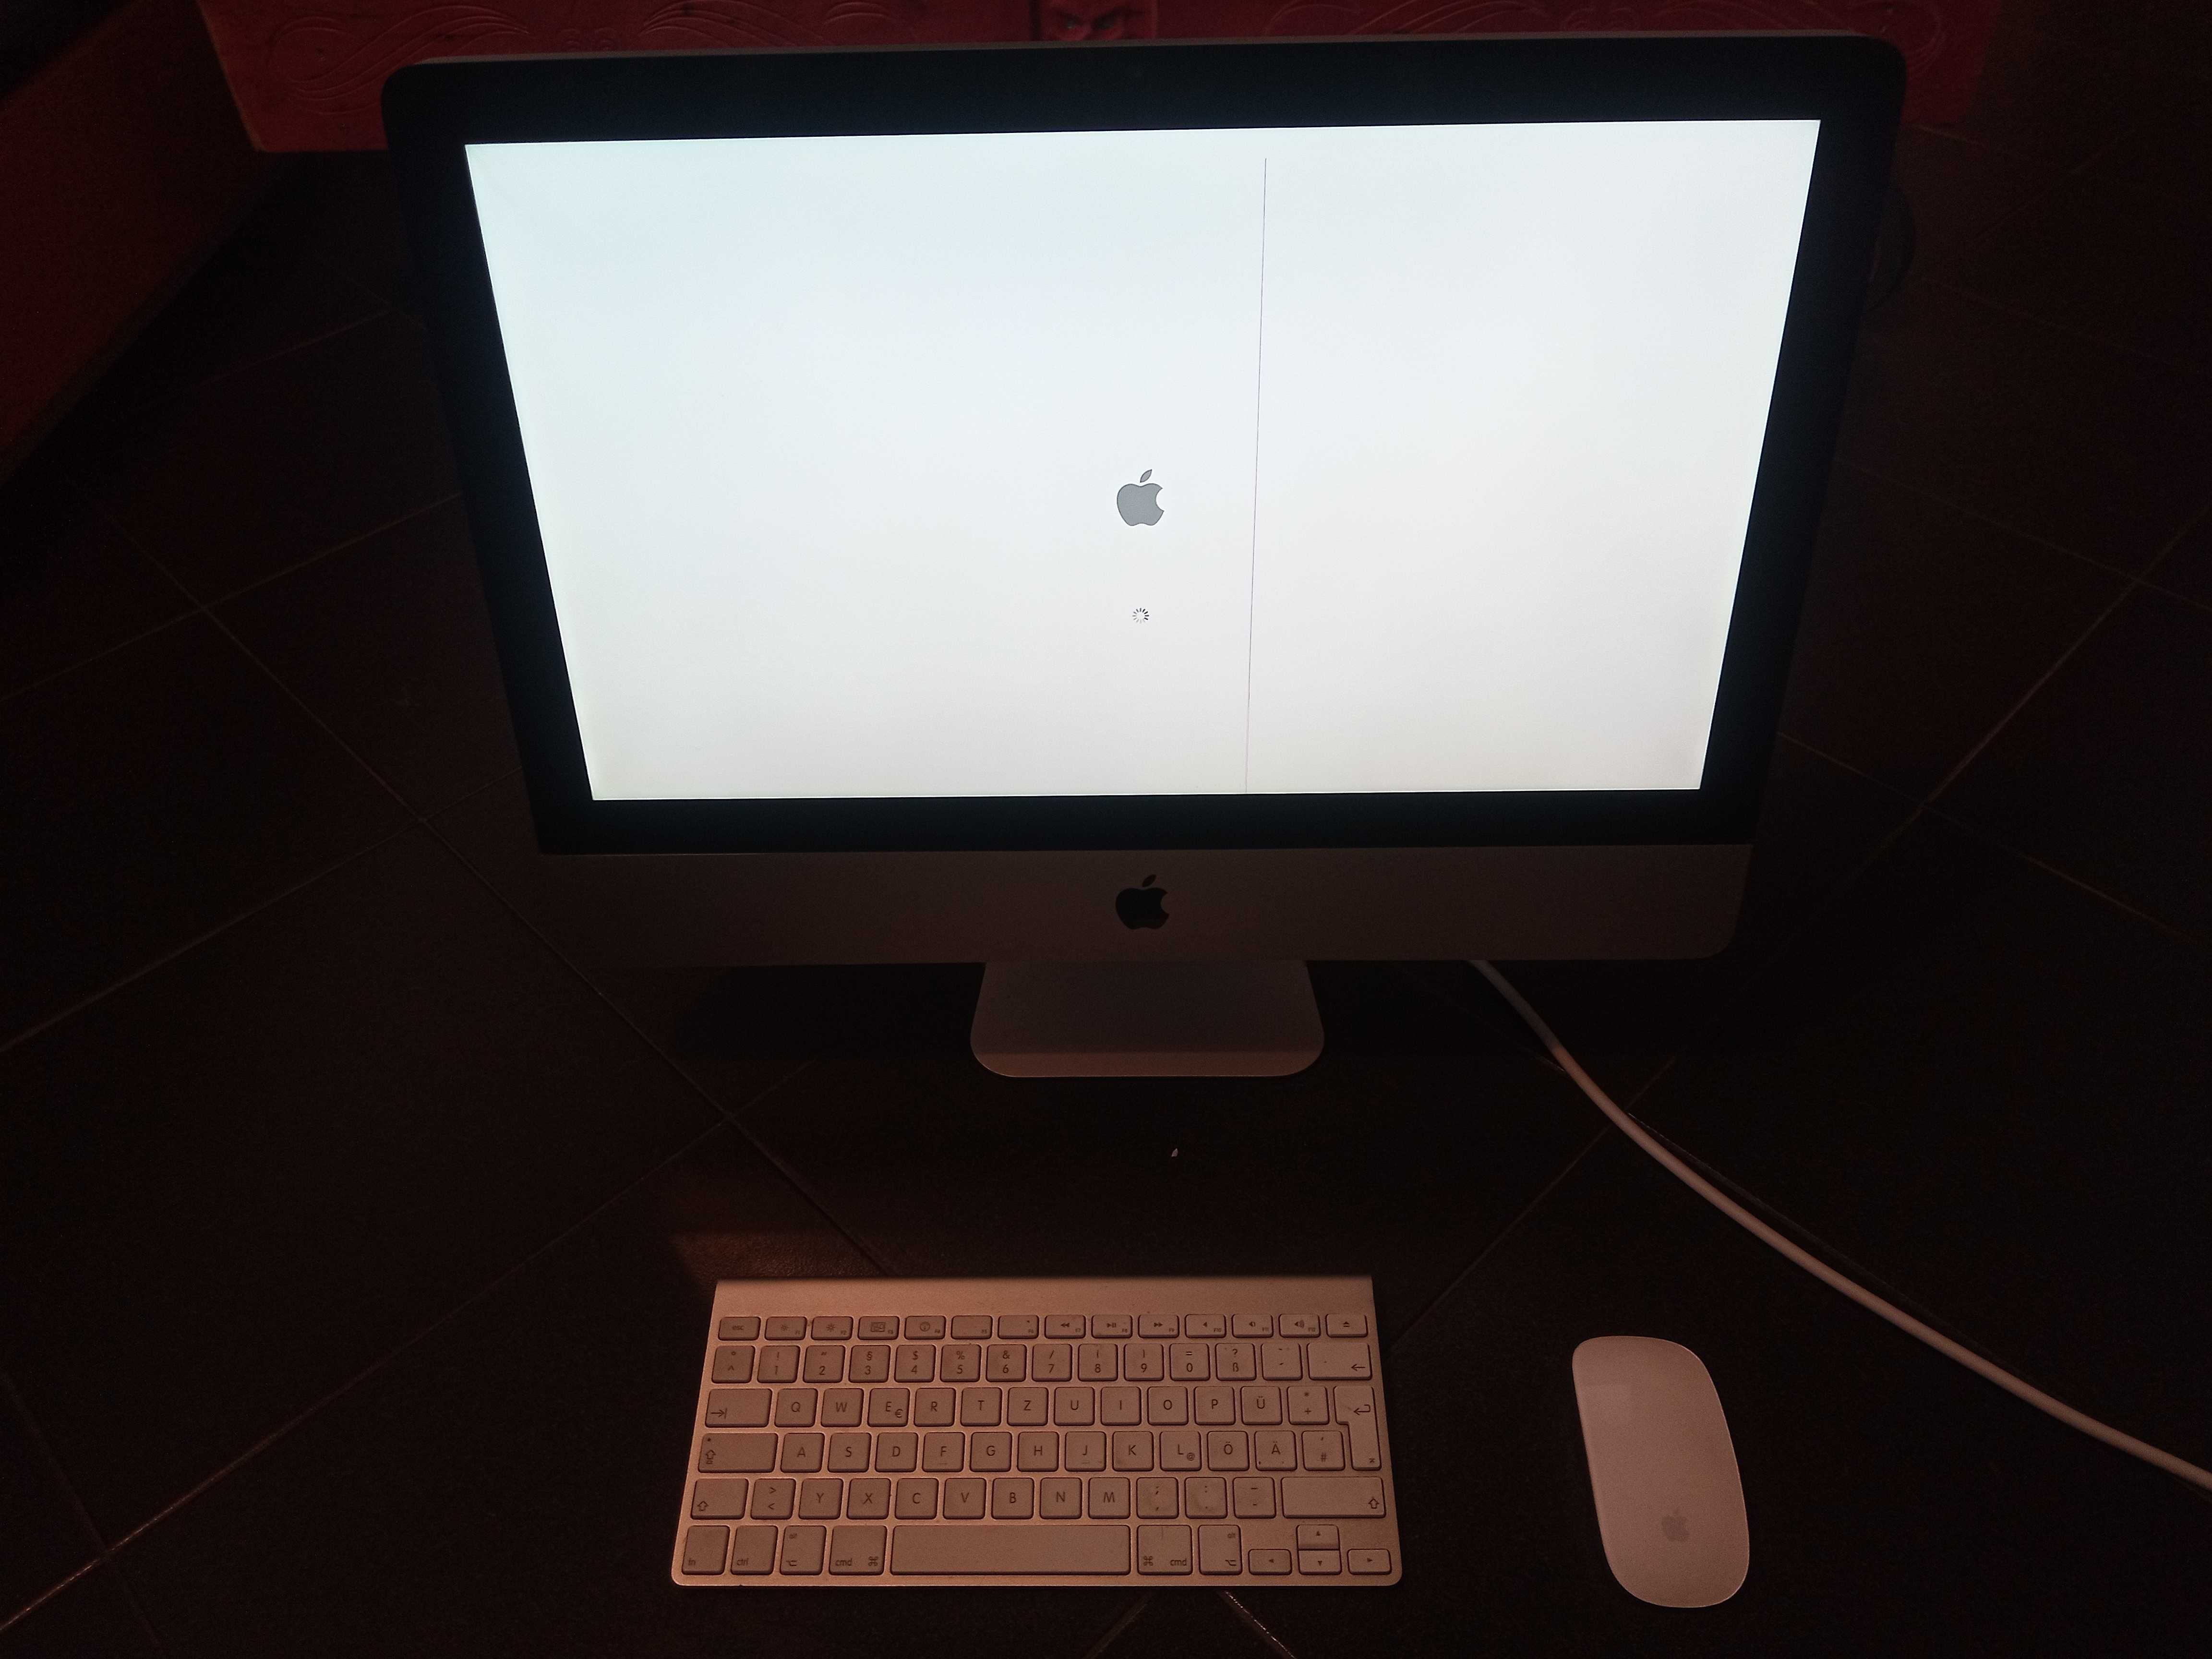 I MAC компютър 2011